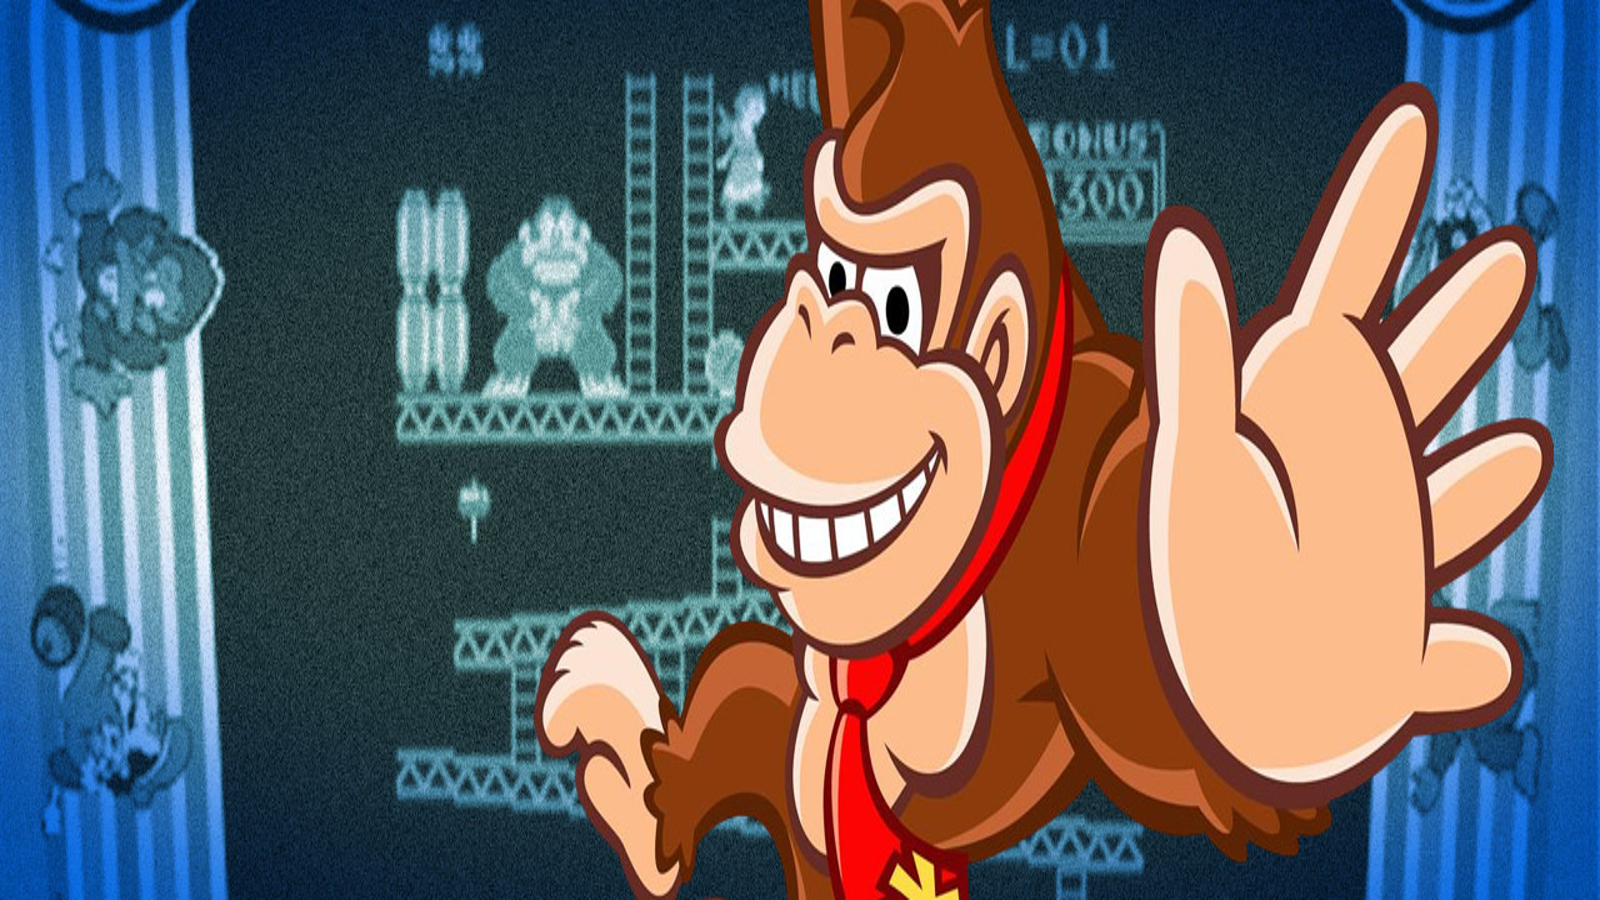  Shigeru Miyamoto: Super Mario Bros., Donkey Kong, The